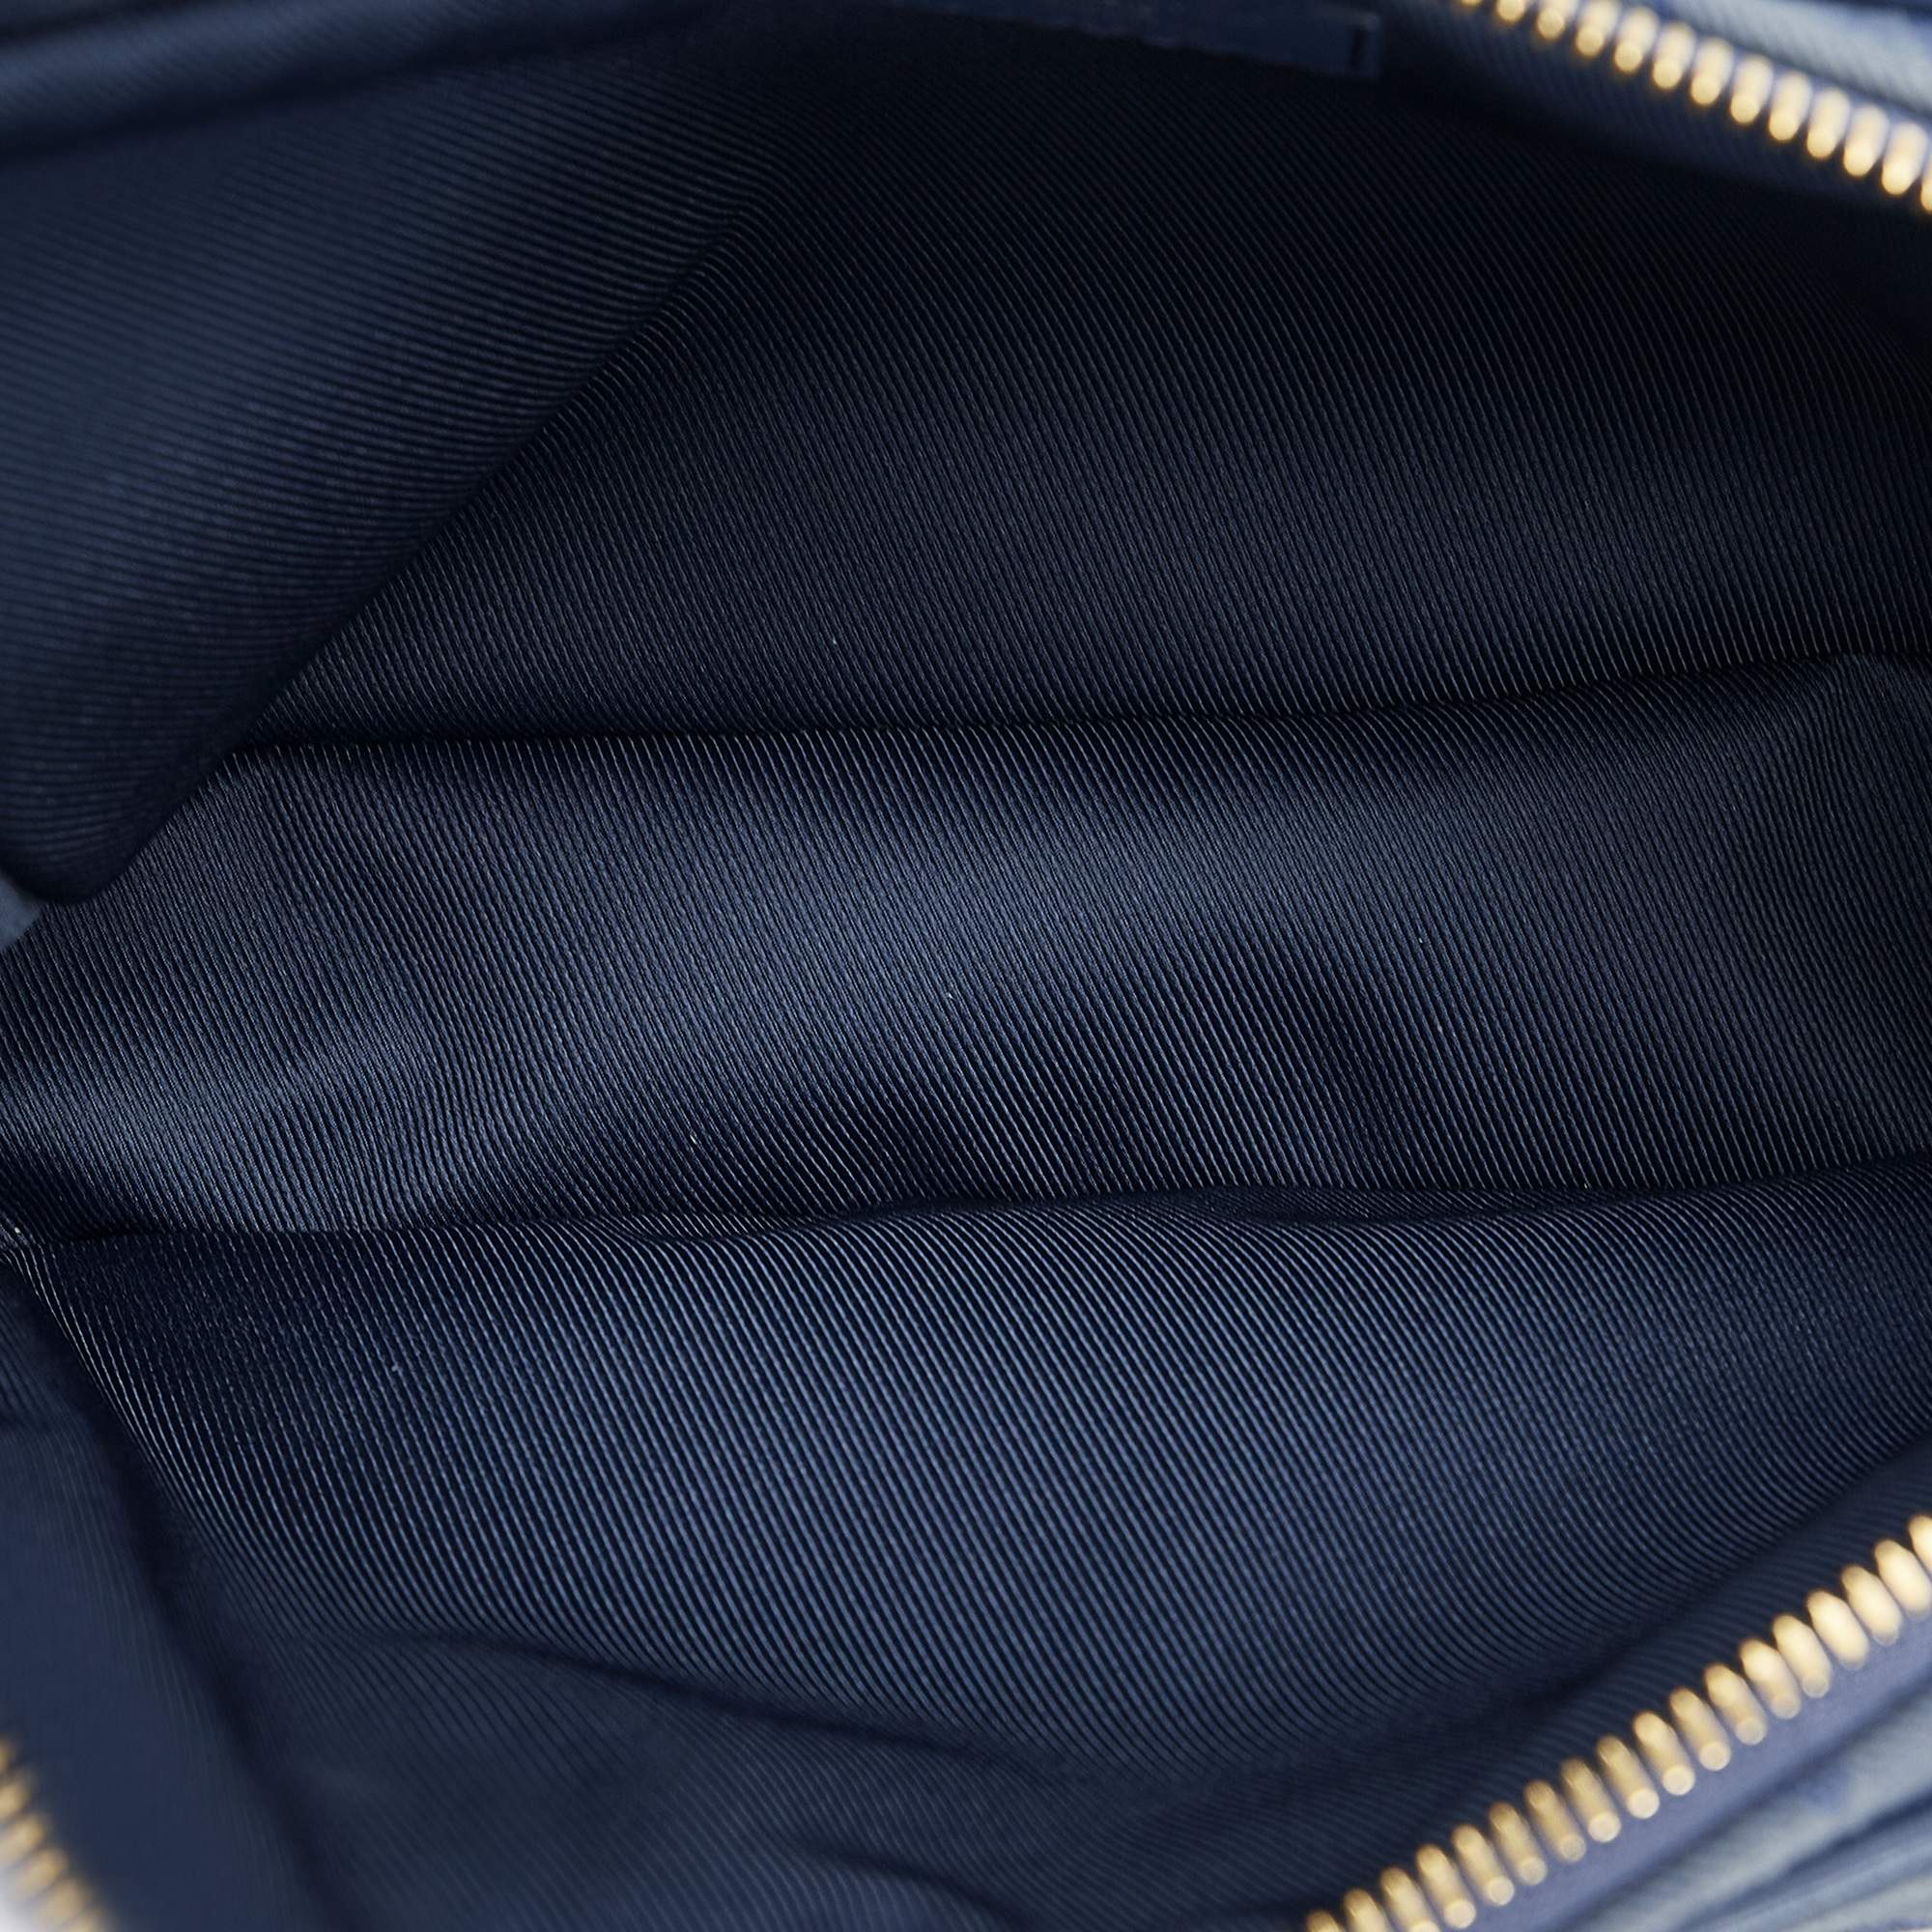 Louis Vuitton Monogram Denim Outdoor Bumbag - Blue Waist Bags